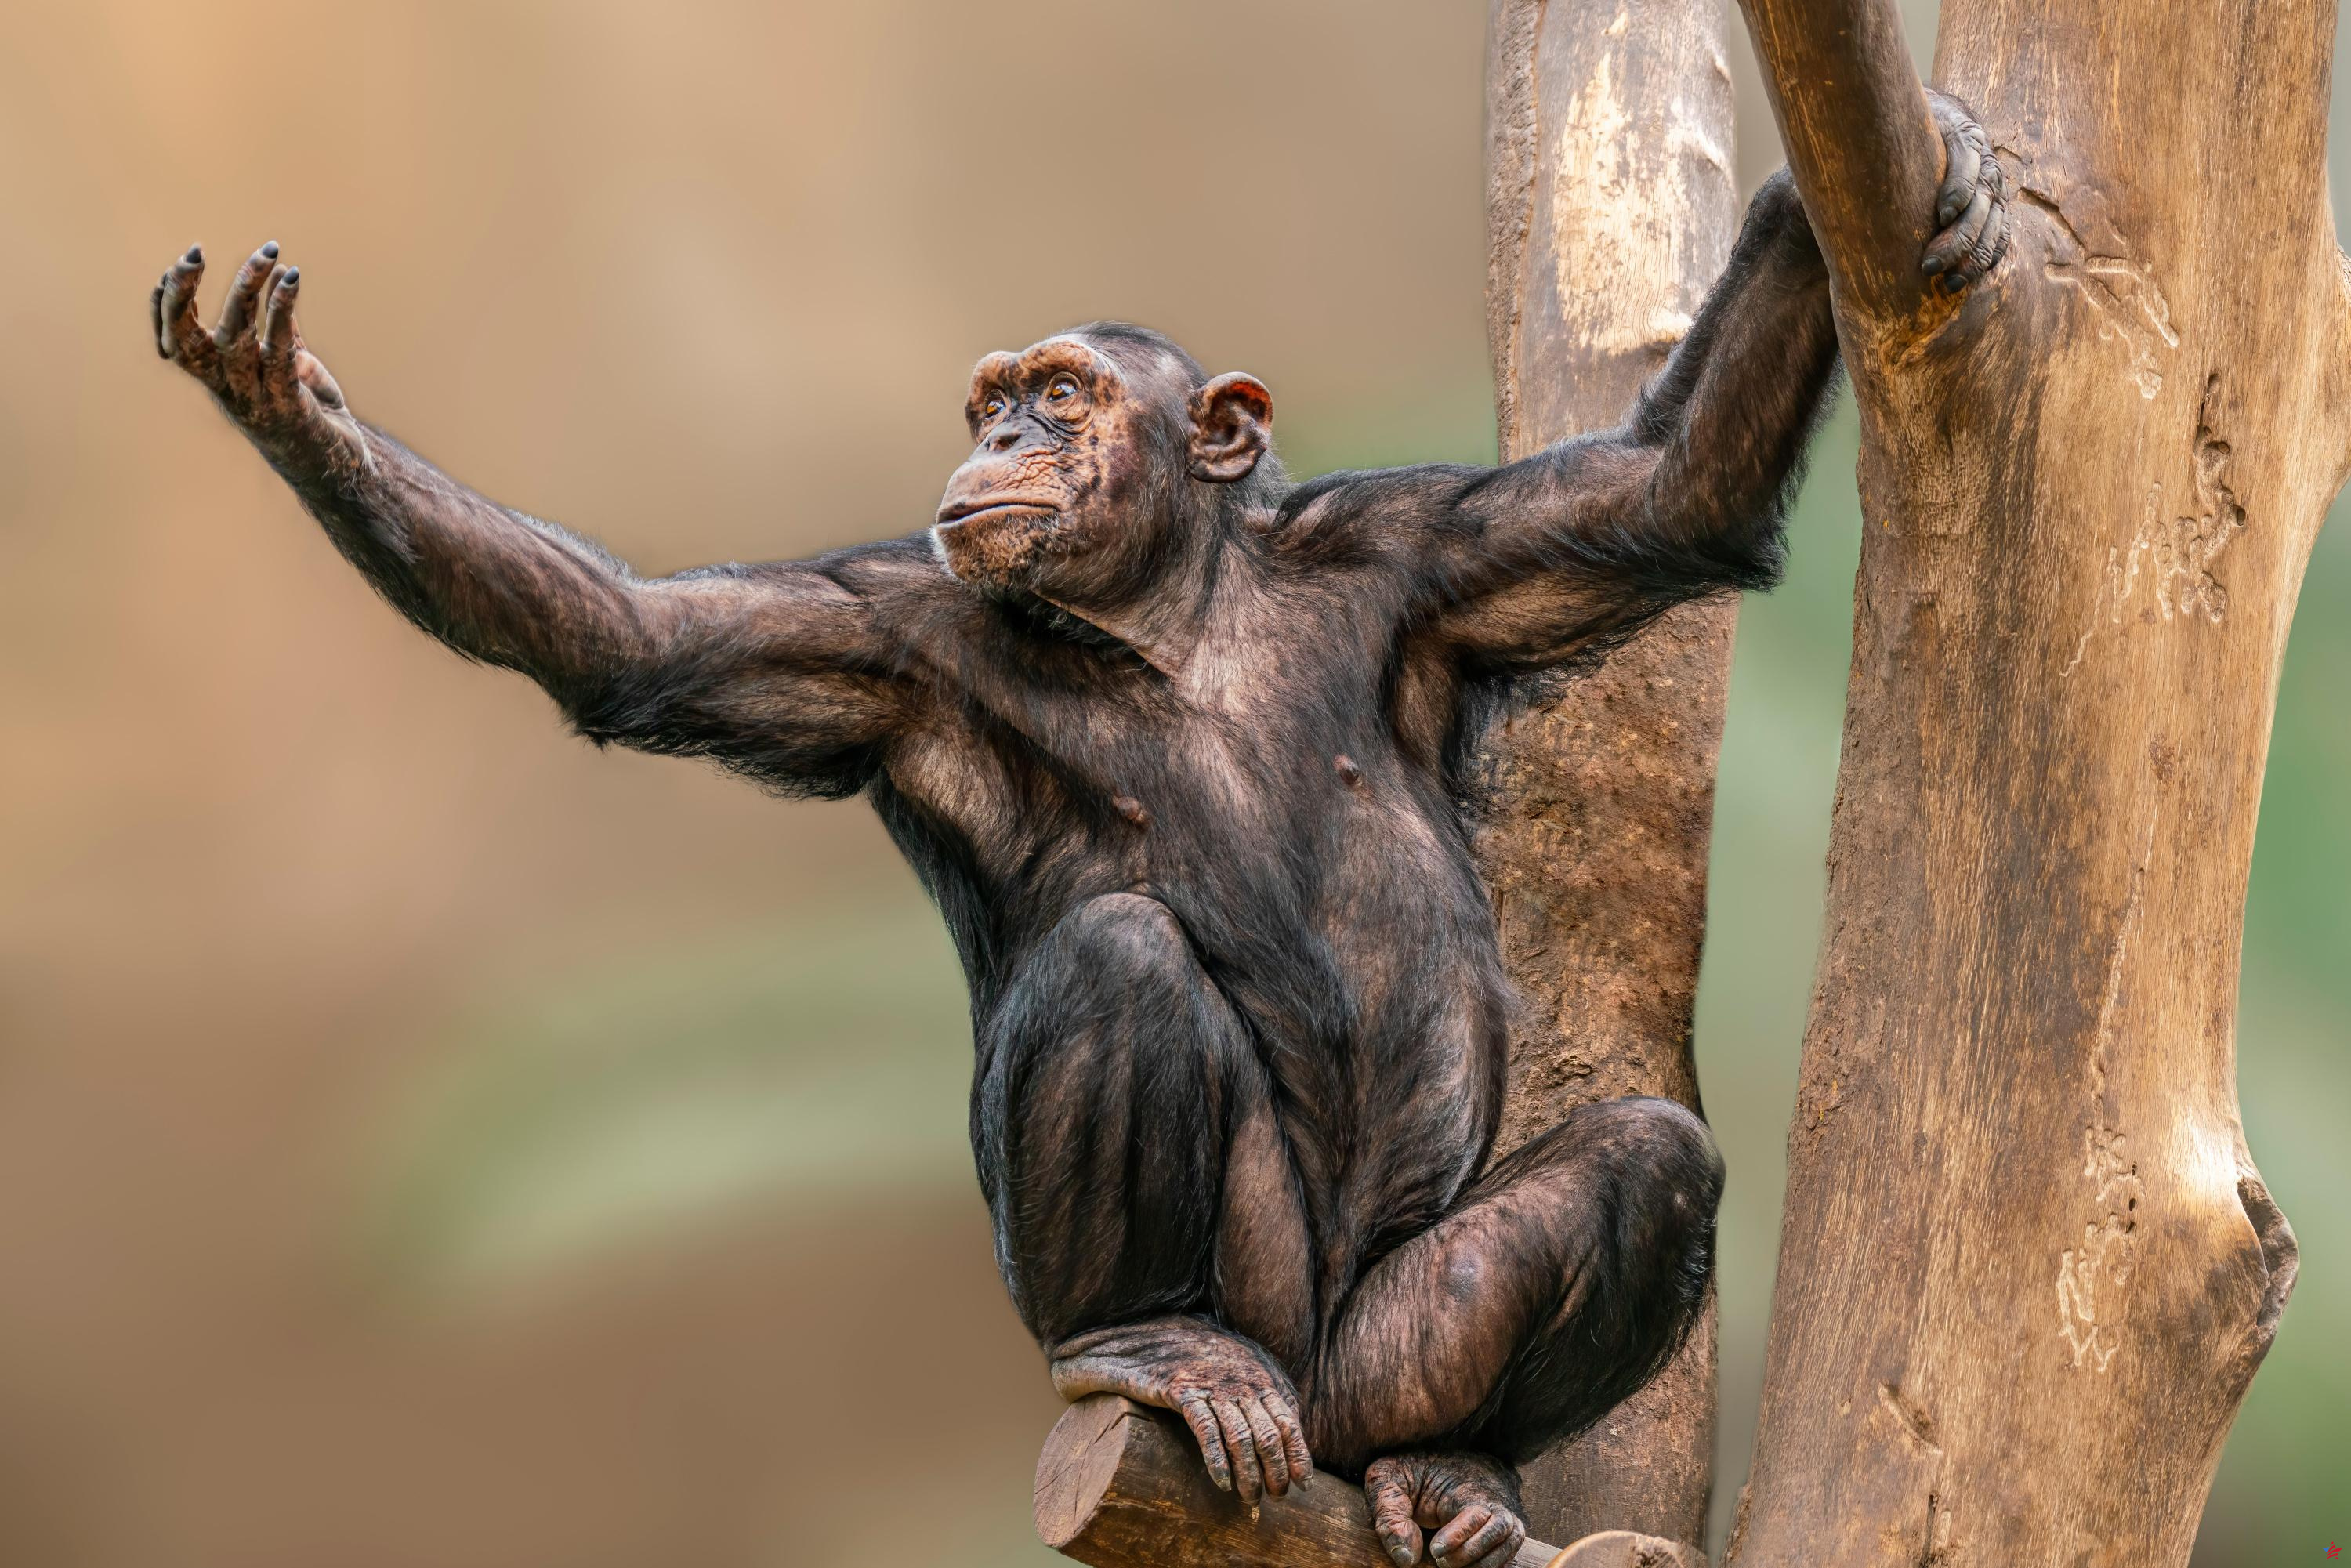 Los abejorros y los chimpancés también pueden transmitir sus habilidades